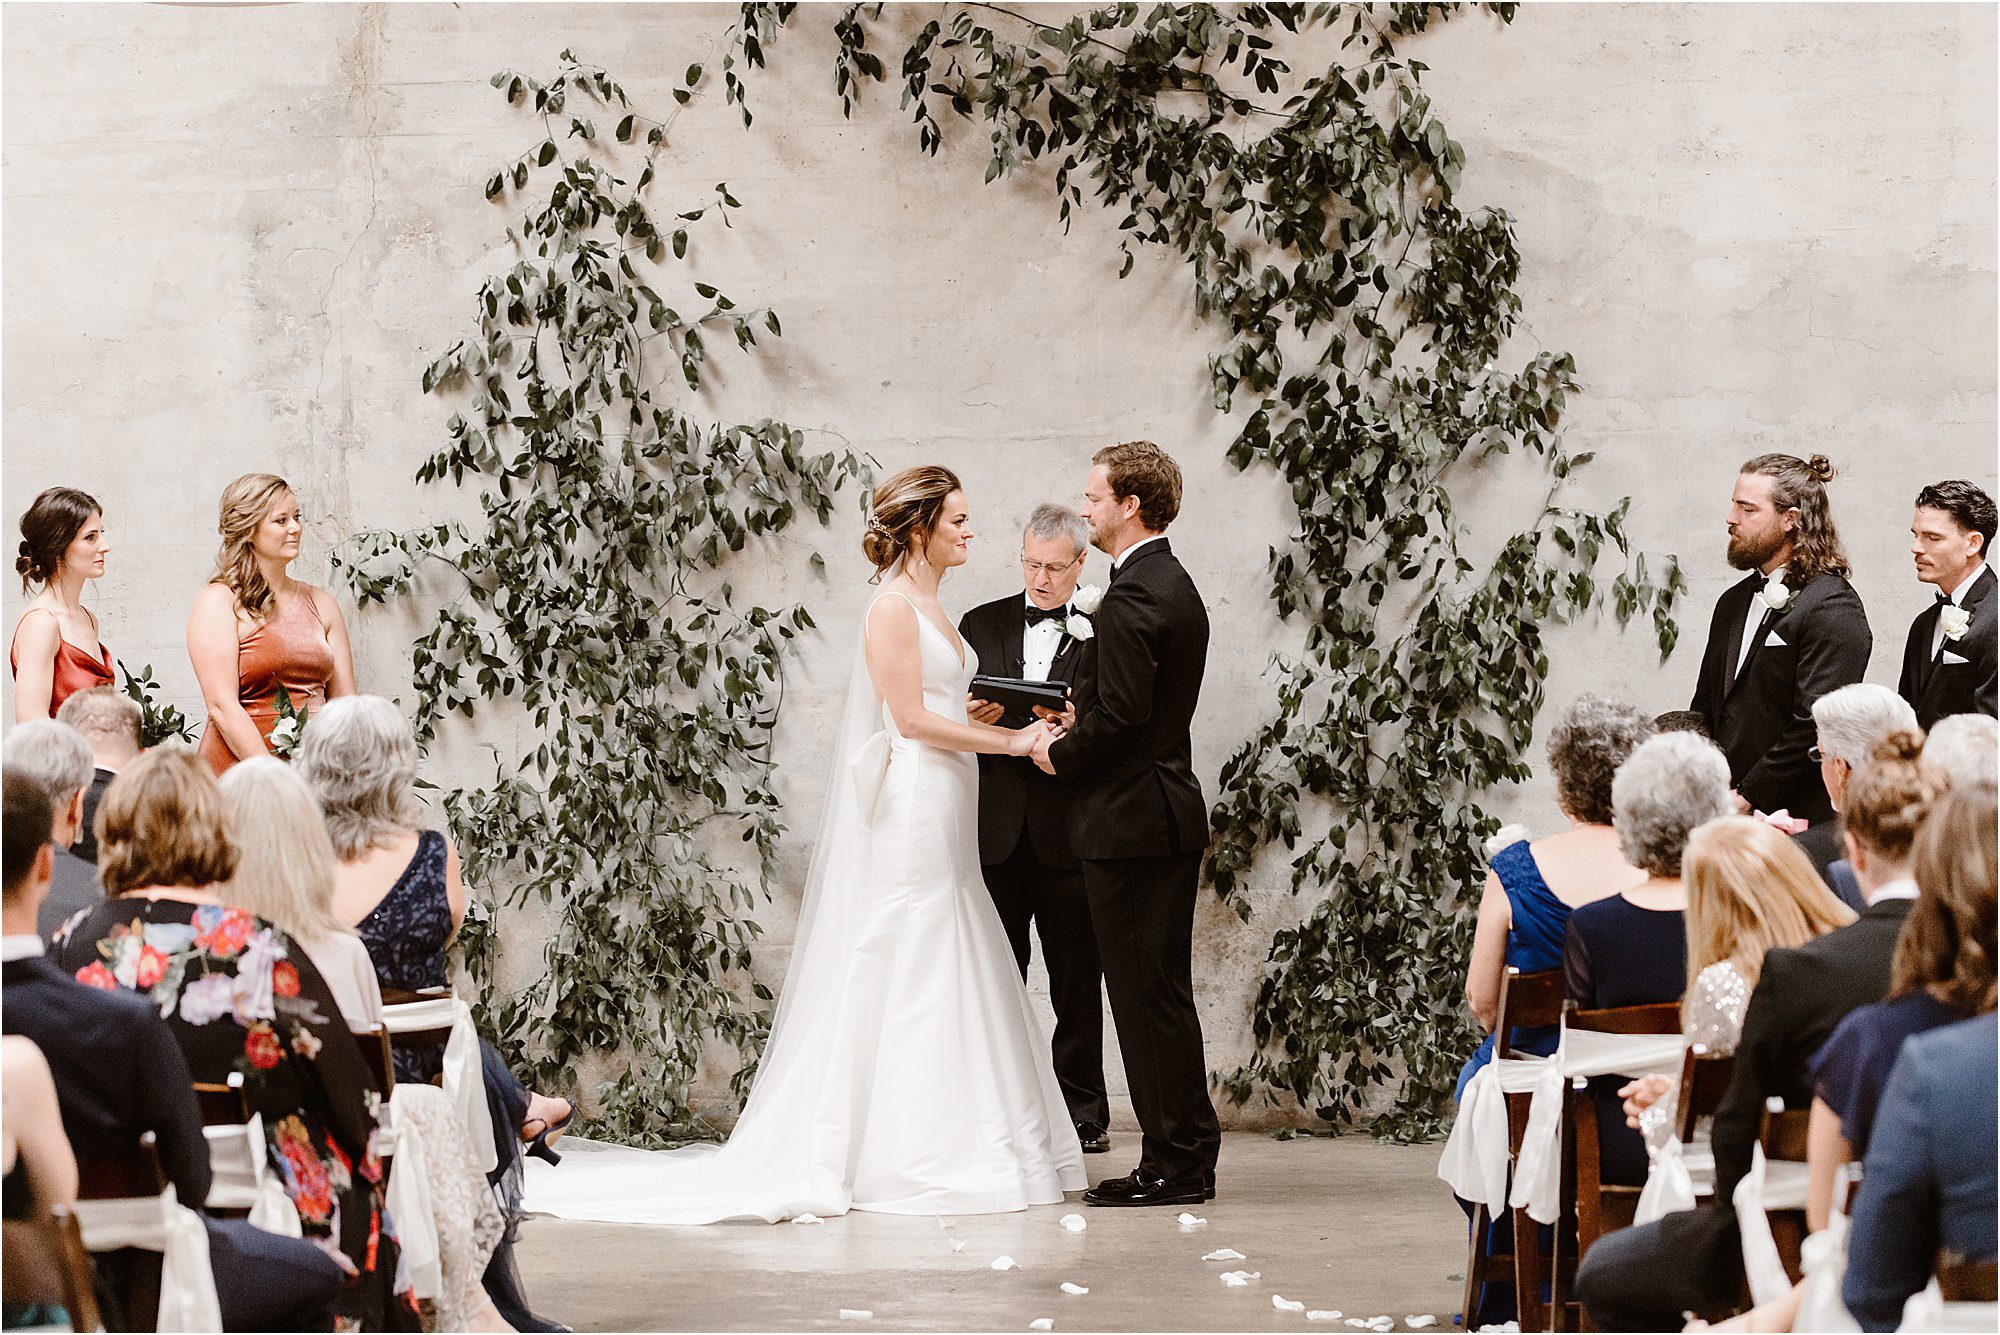 wedding ceremony infront of greenery arbor